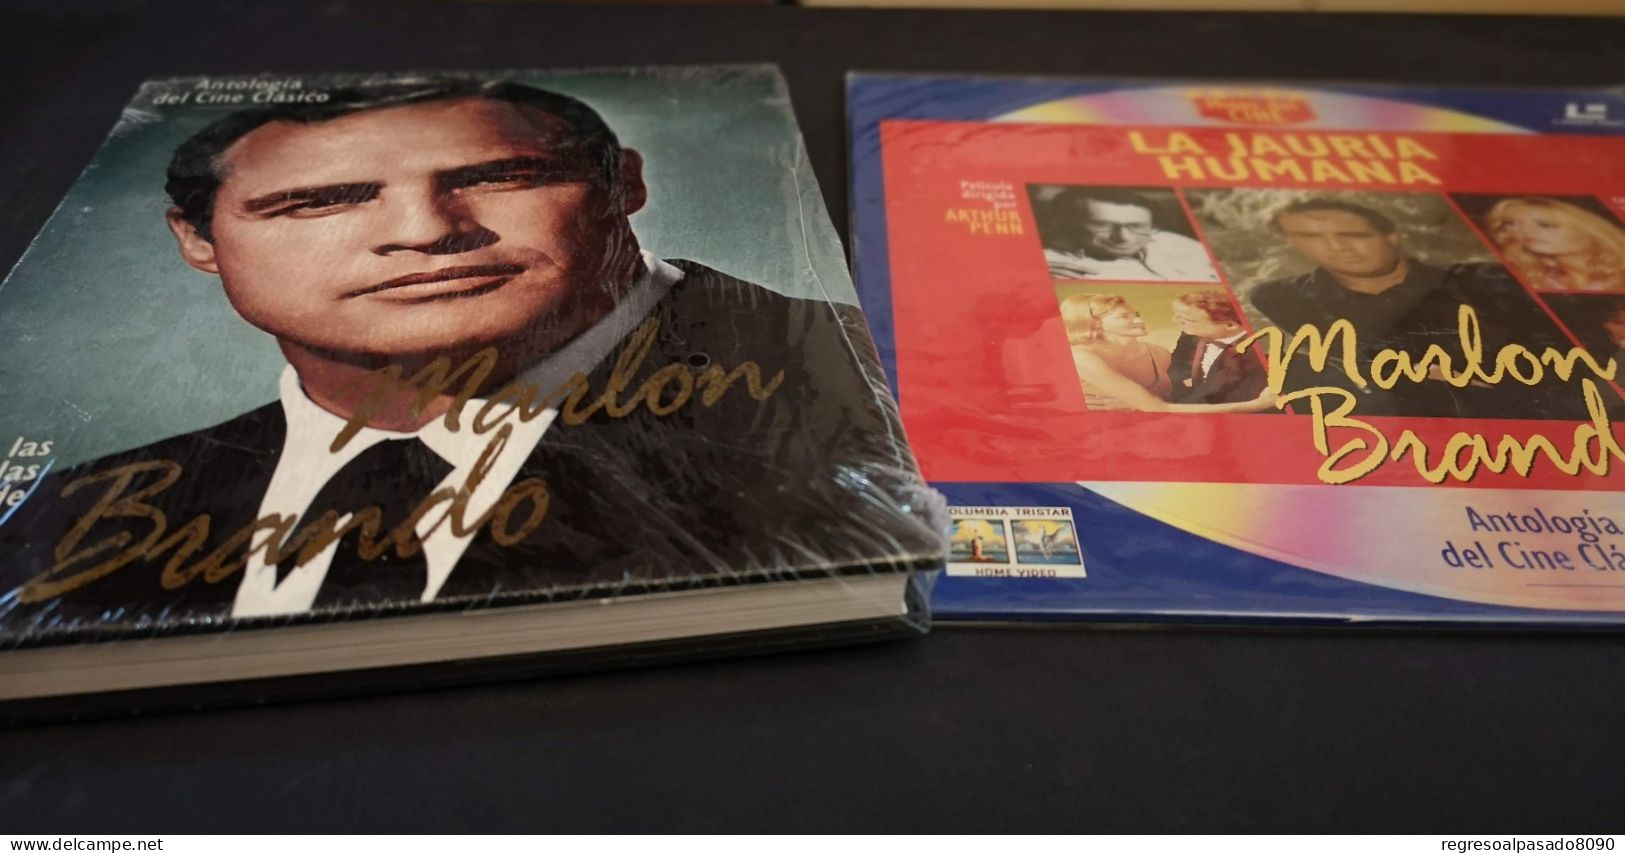 Marlon Brando Libro Y Película Laser Disc Laserdisc La Jauria Humana. Mitos Del Cine Planeta Años 90 - Klassiekers